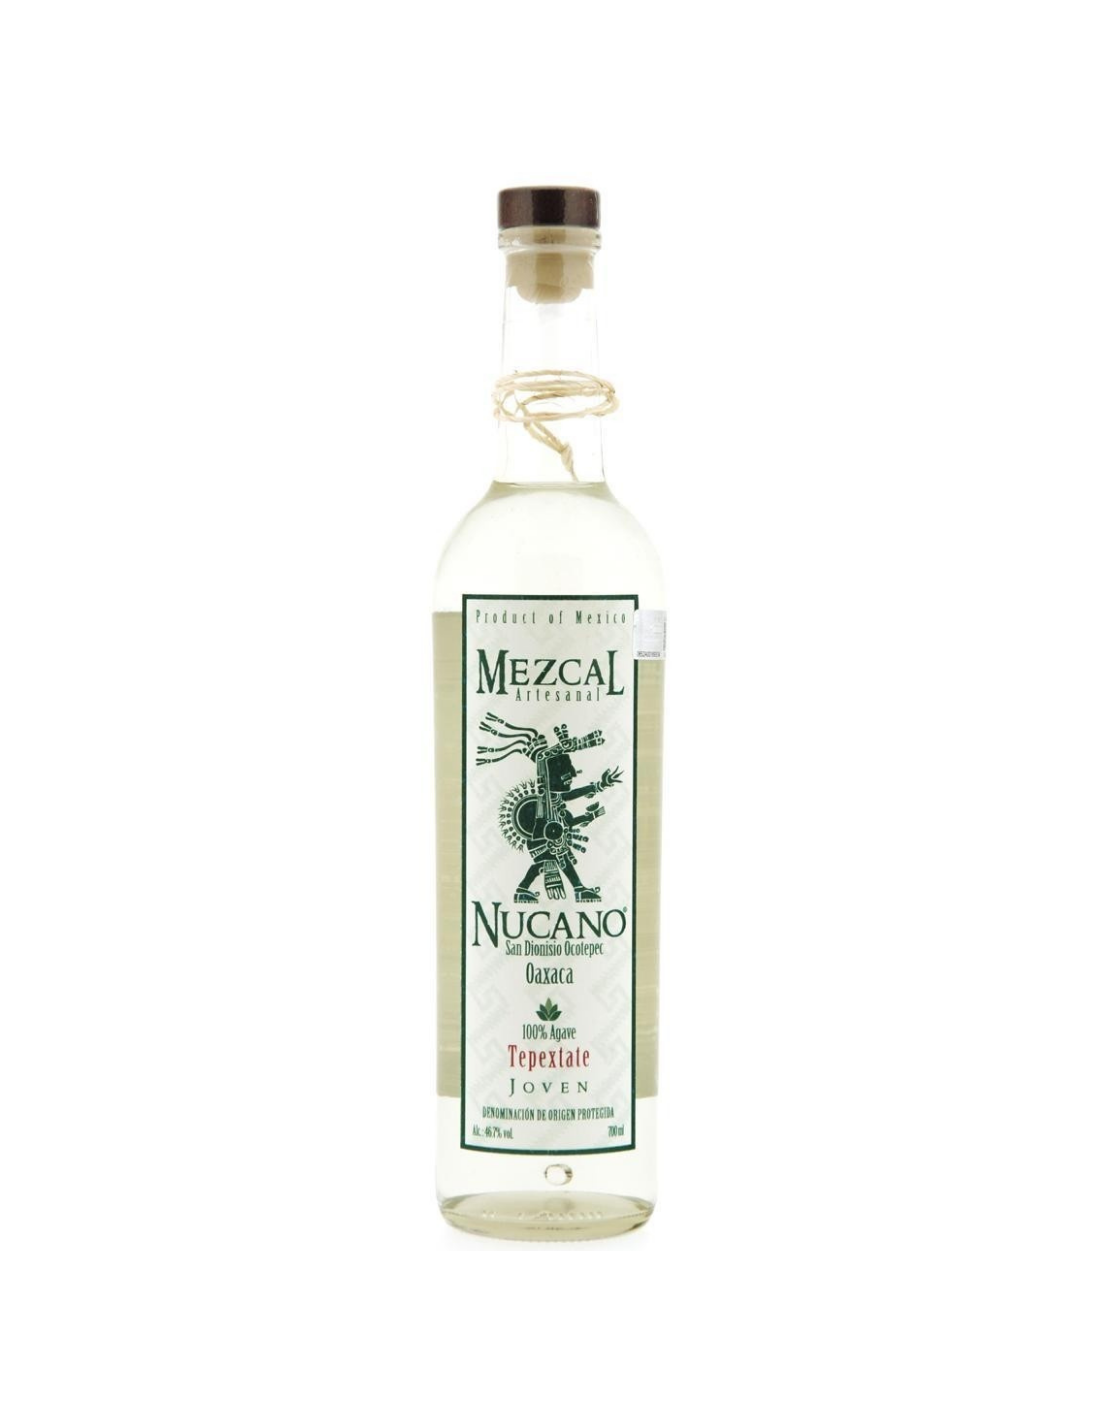 Tequila Mezcal Nucano Topextate Joven, 0.7L, 45.7% alc., Mexic alcooldiscount.ro